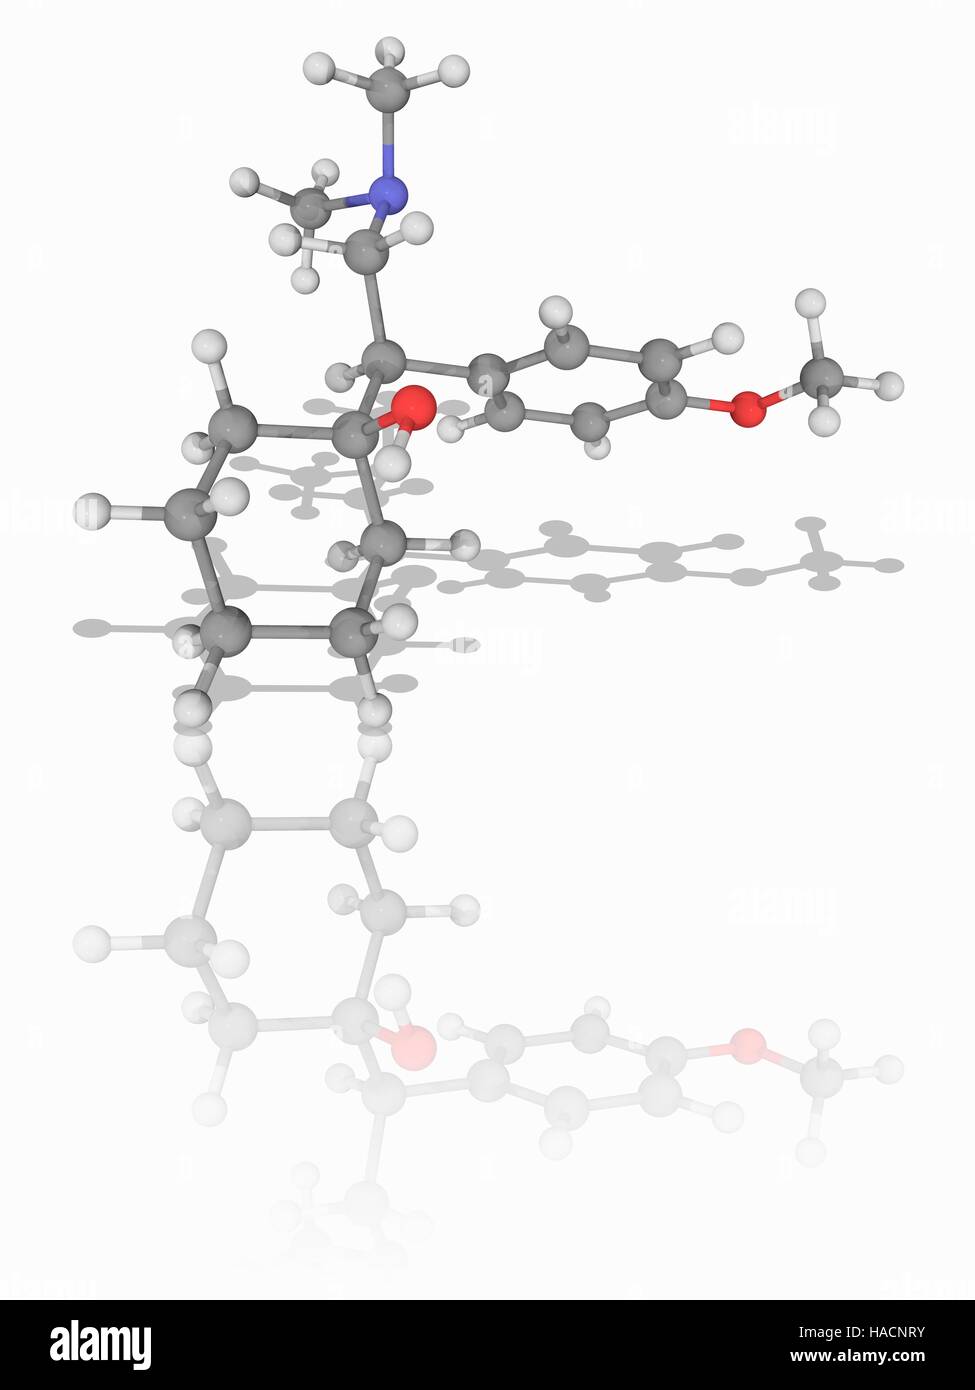 La venlafaxine. Le modèle moléculaire de l'antidépresseur venlafaxine (C17.H27.N.O2). Utilisé pour traiter la dépression, le trouble anxieux généralisé, la phobie sociale, le trouble panique et les symptômes vasomoteurs, c'est un inhibiteur du recaptage de la sérotonine-noradrénaline. Les atomes sont représentés comme des sphères et sont codés par couleur : carbone (gris), l'hydrogène (blanc), l'azote (bleu) et d'oxygène (rouge). L'illustration. Banque D'Images